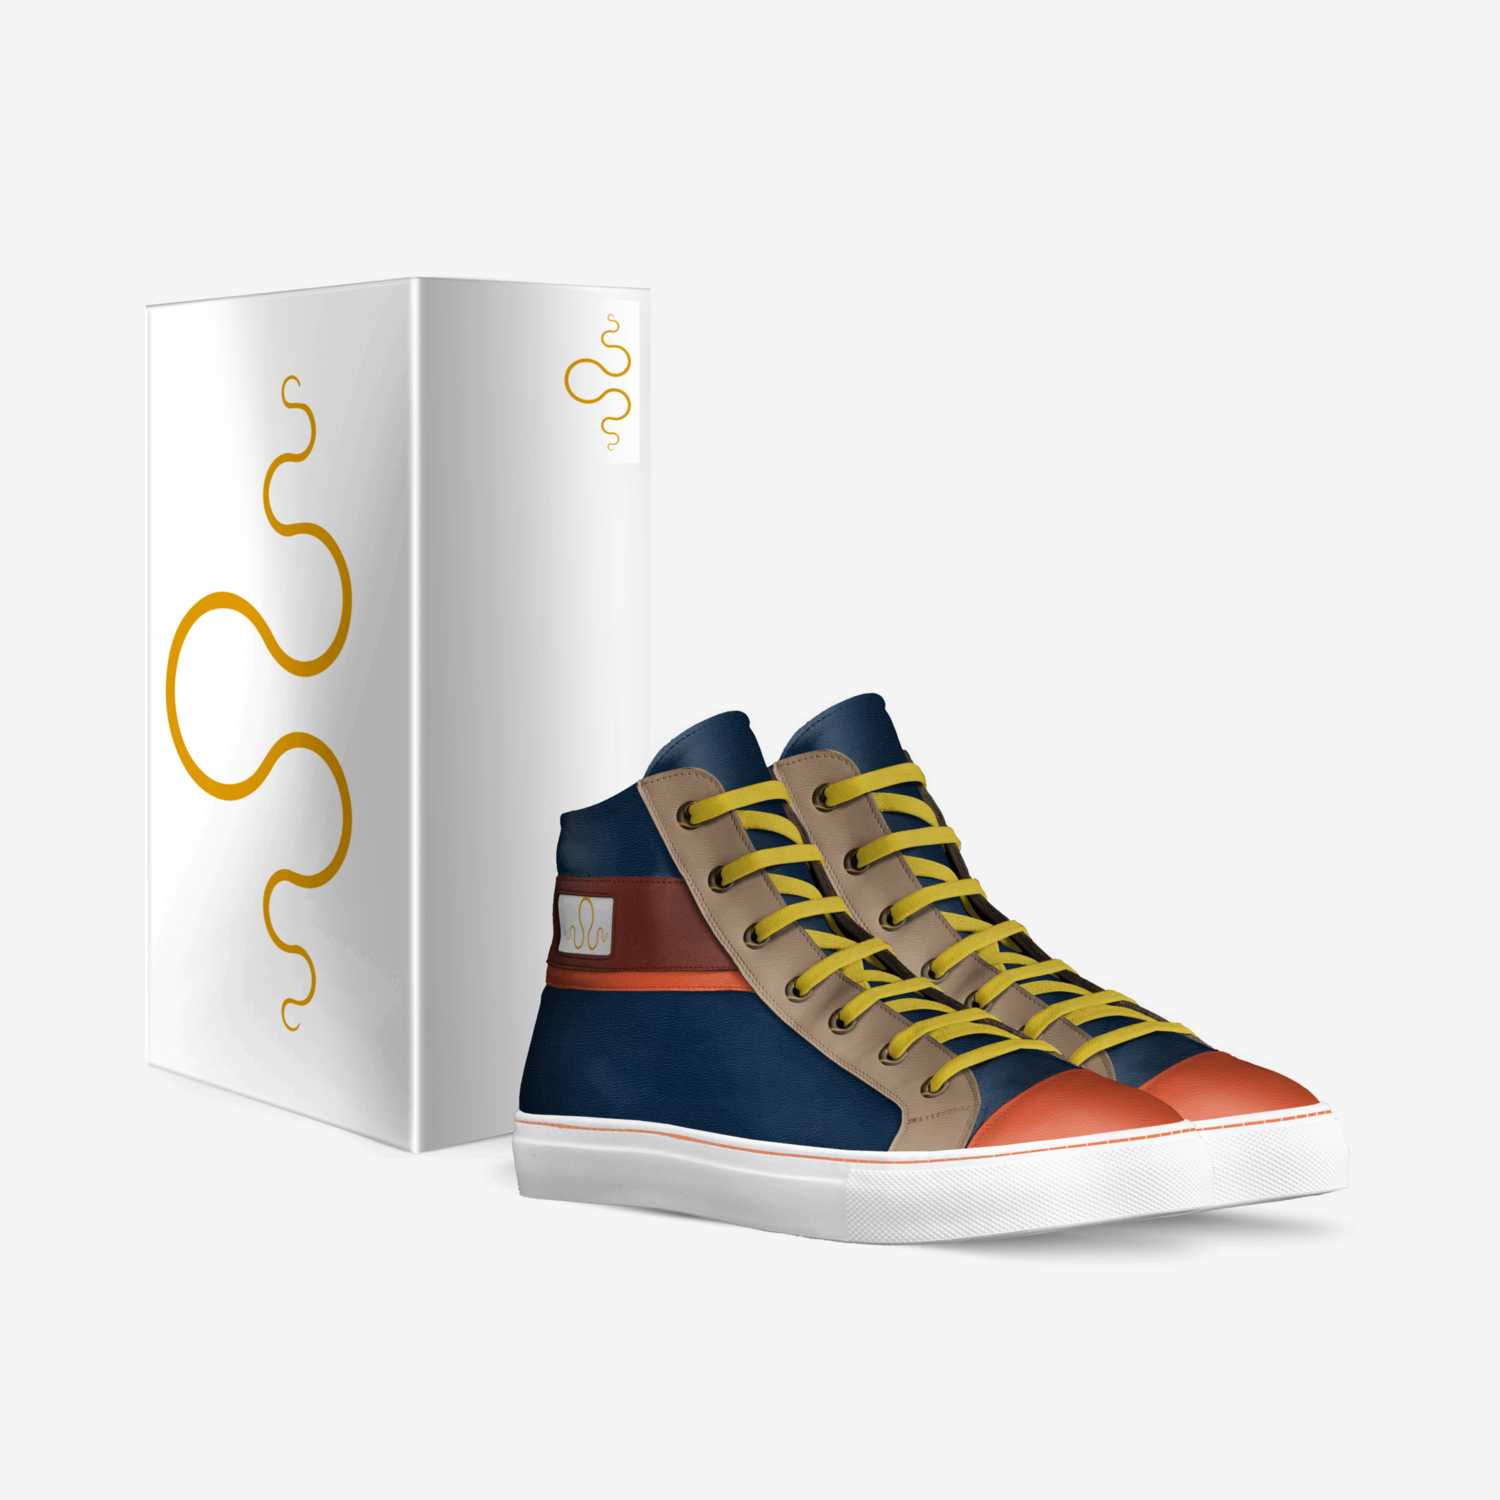 Kraken "We Believe" custom made in Italy shoes by Carlos Segarra | Box view